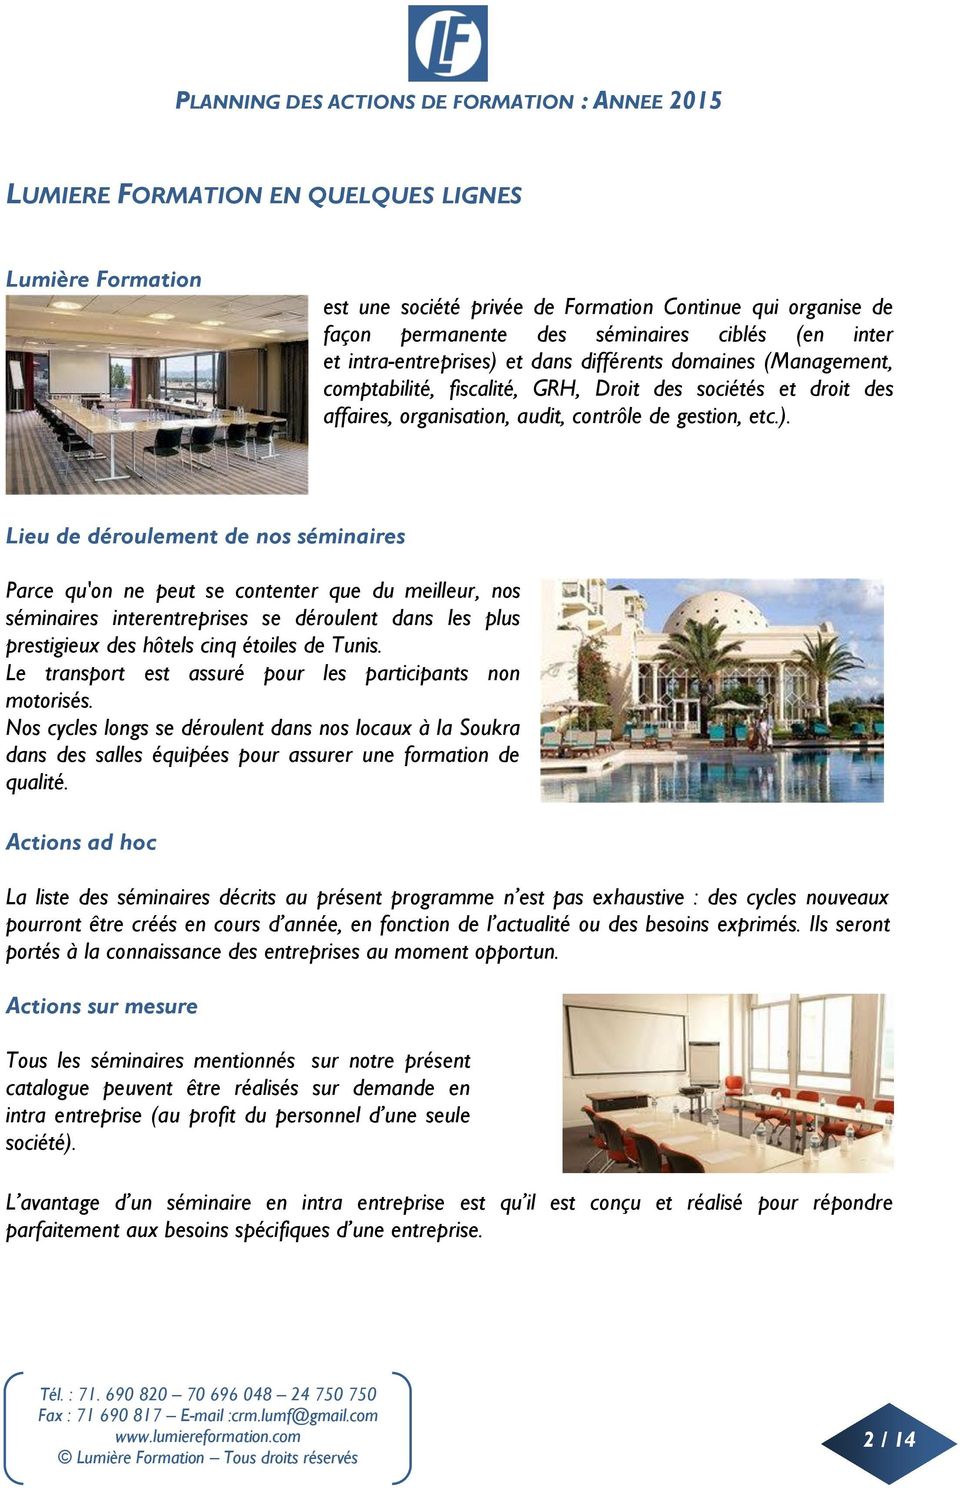 Lieu de déroulement de nos séminaires Parce qu'on ne peut se contenter que du meilleur, nos séminaires interentreprises se déroulent dans les plus prestigieux des hôtels cinq étoiles de Tunis.